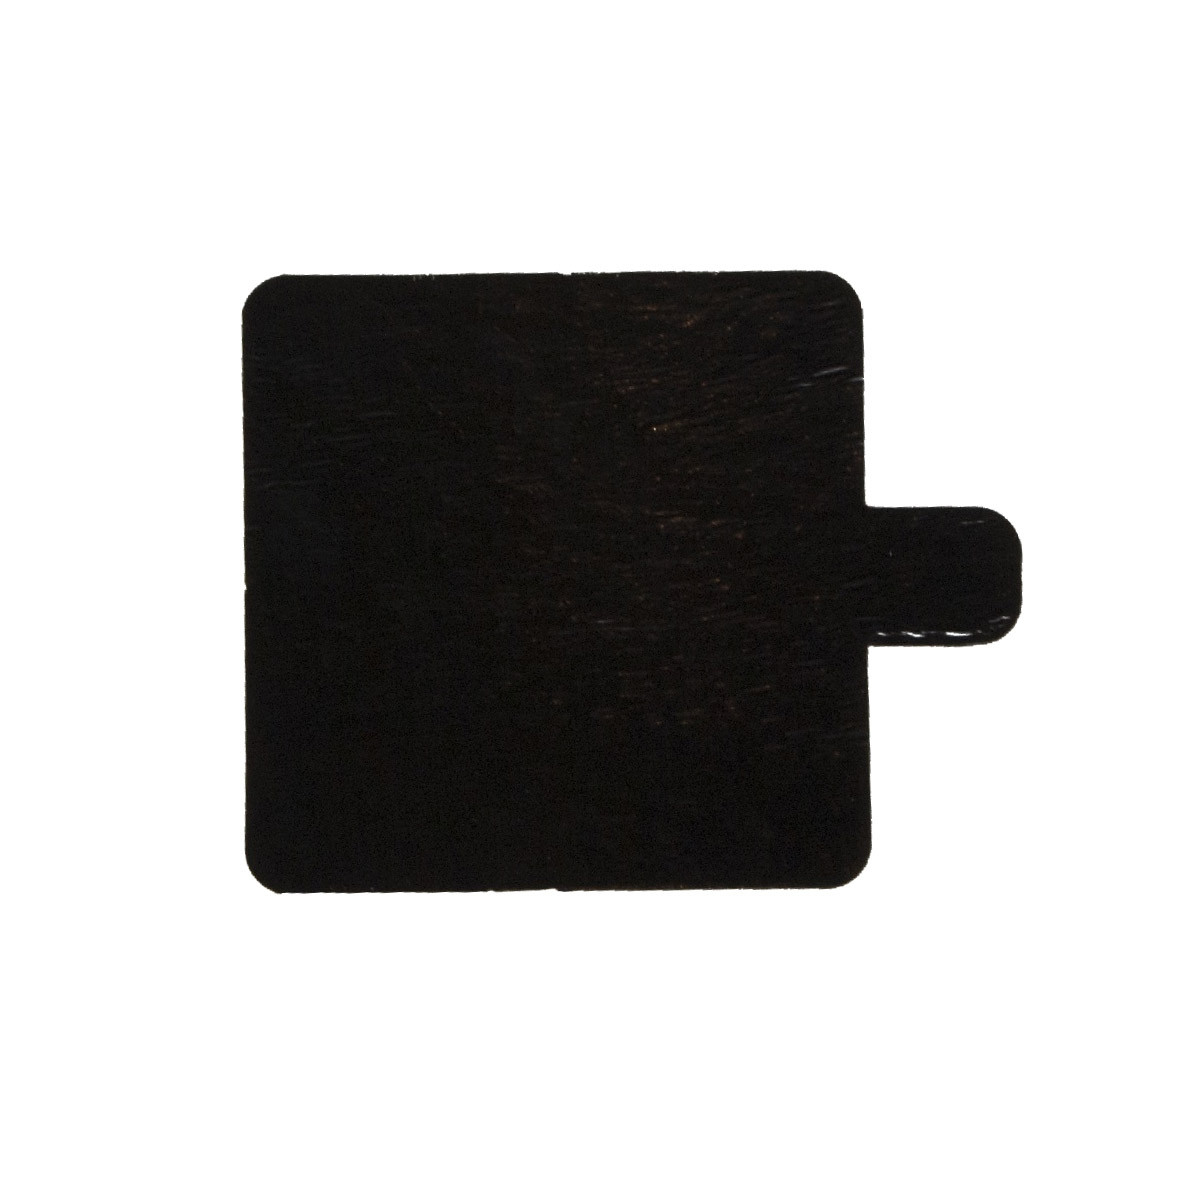 Cake Carton Square Gold/Black with lip 6x6cm per piece